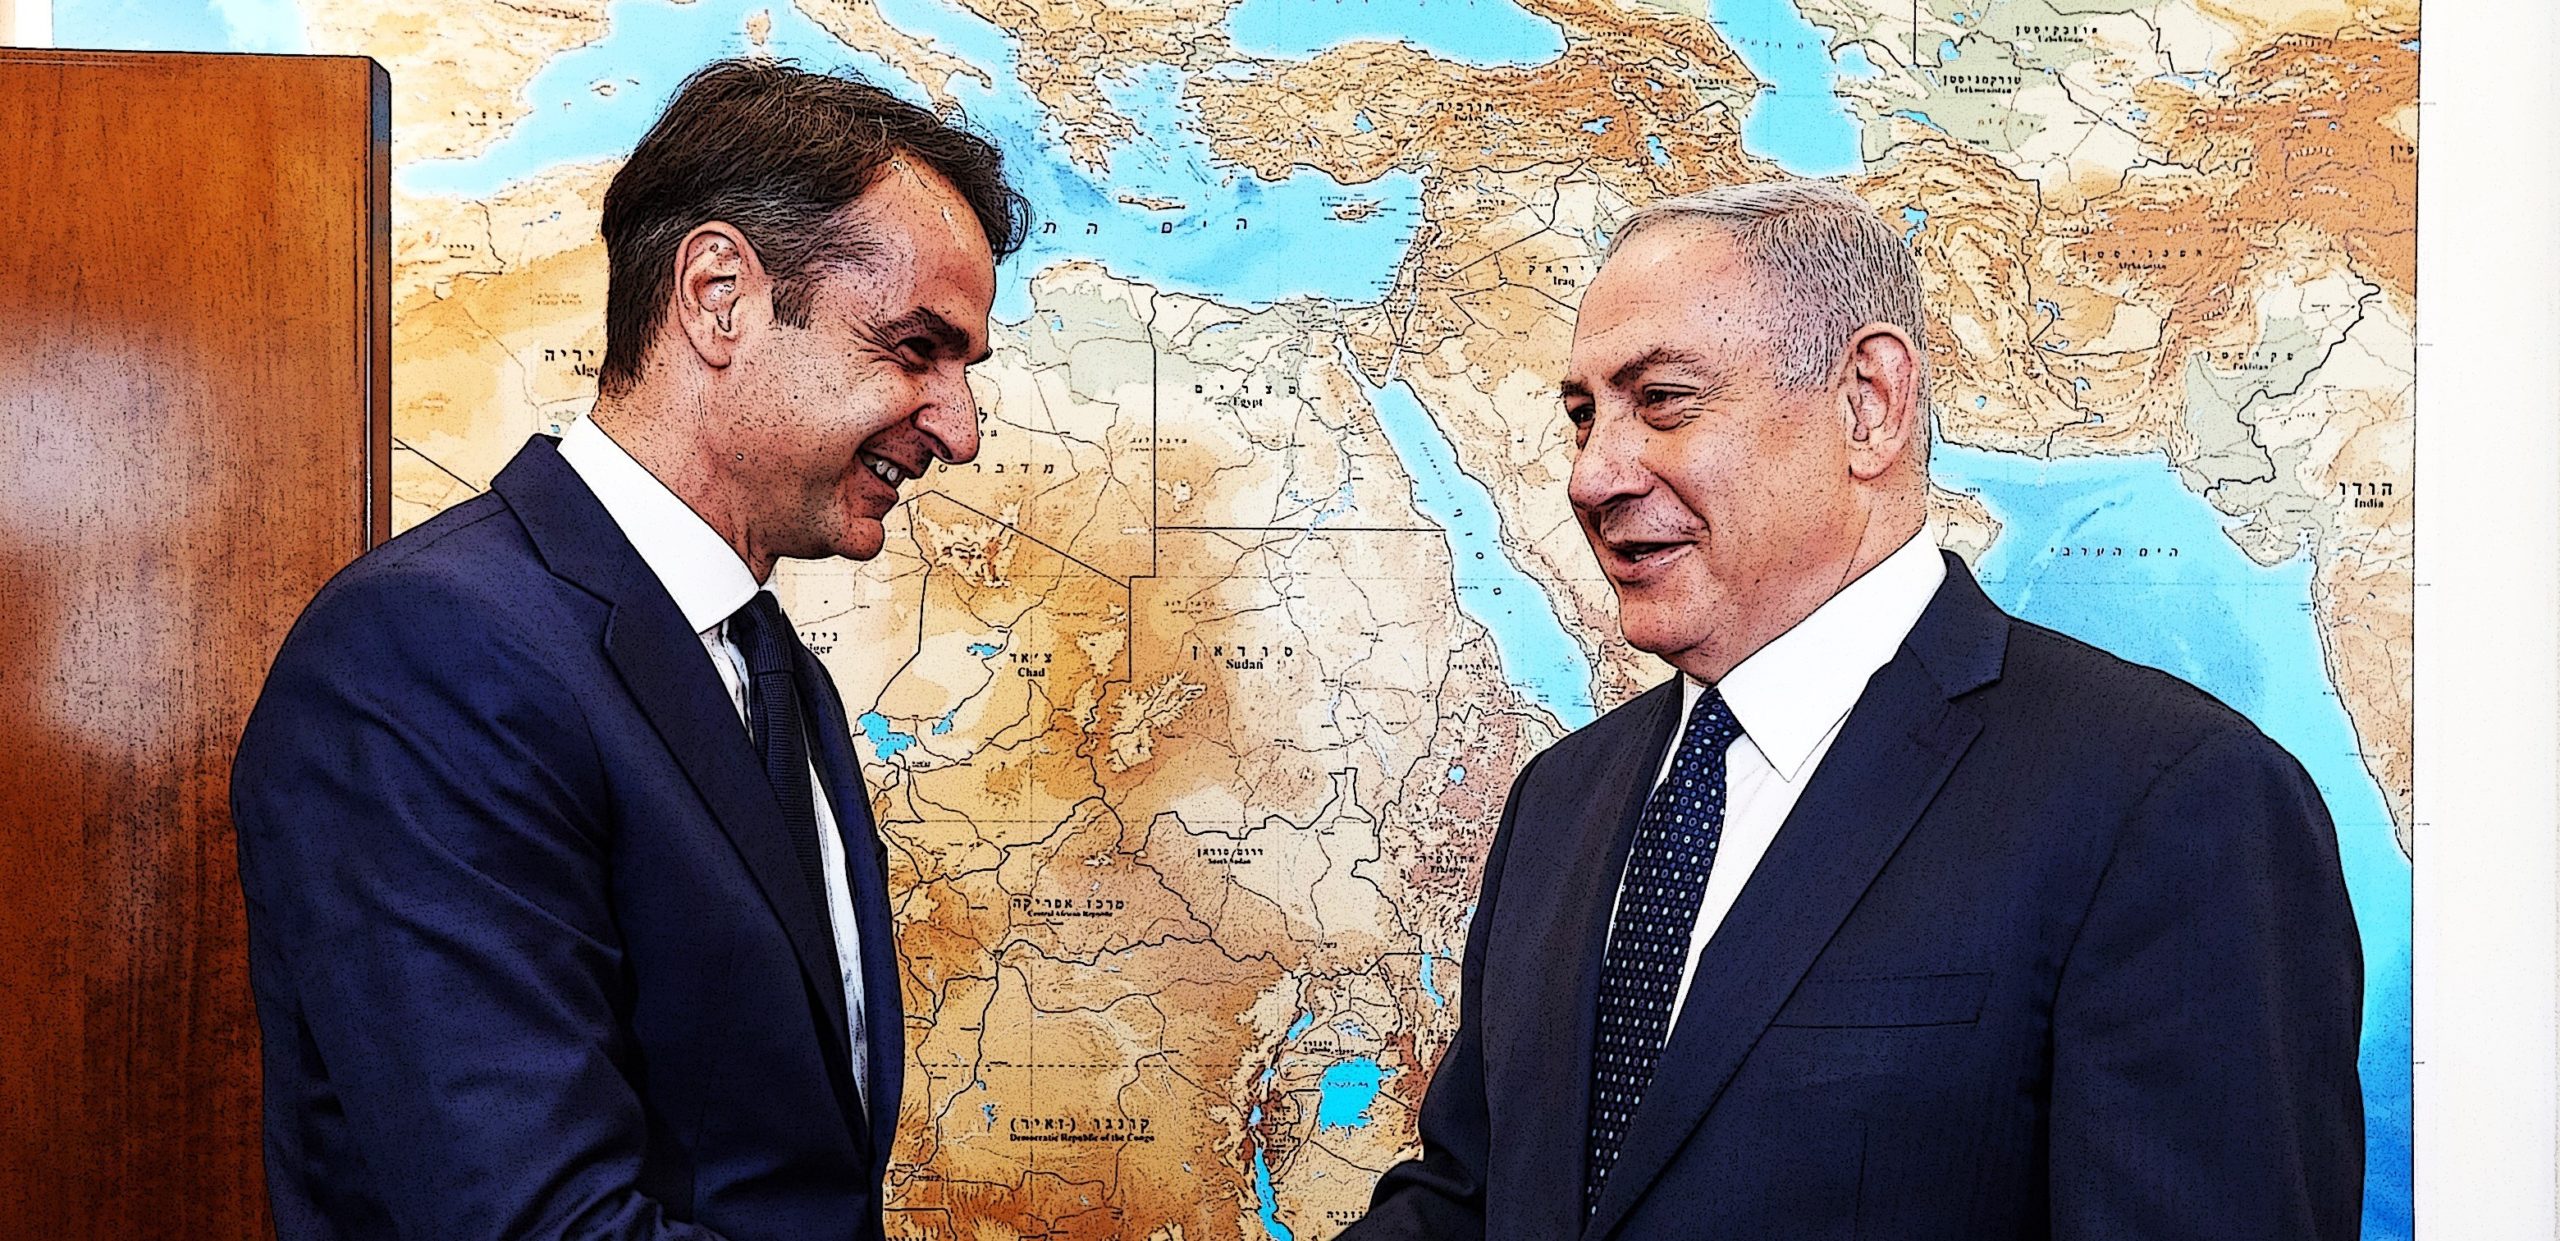 Το Ισραήλ παίρνει το μέρος της Ελλάδας – Καταδικάζει τη συμφωνίας Τρίπολης & Λιβύης